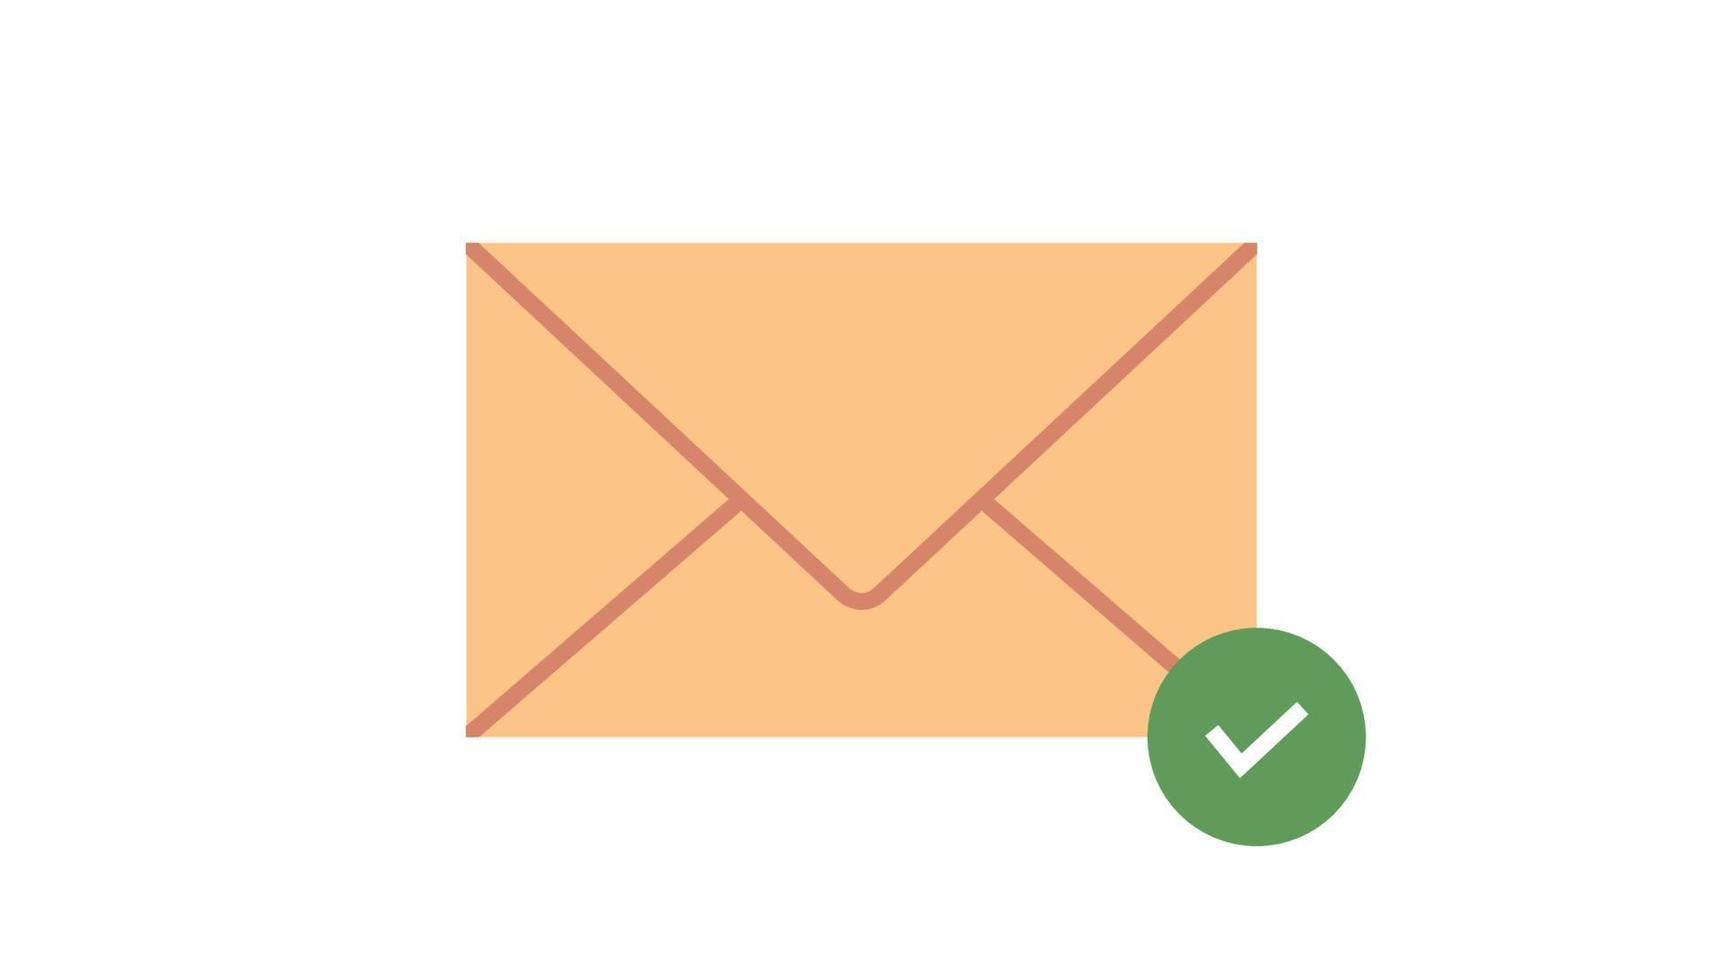 signo de confirmación en el símbolo de correo electrónico y verificación de lectura de correo electrónico concepto simple ilustración vectorial plana. vector